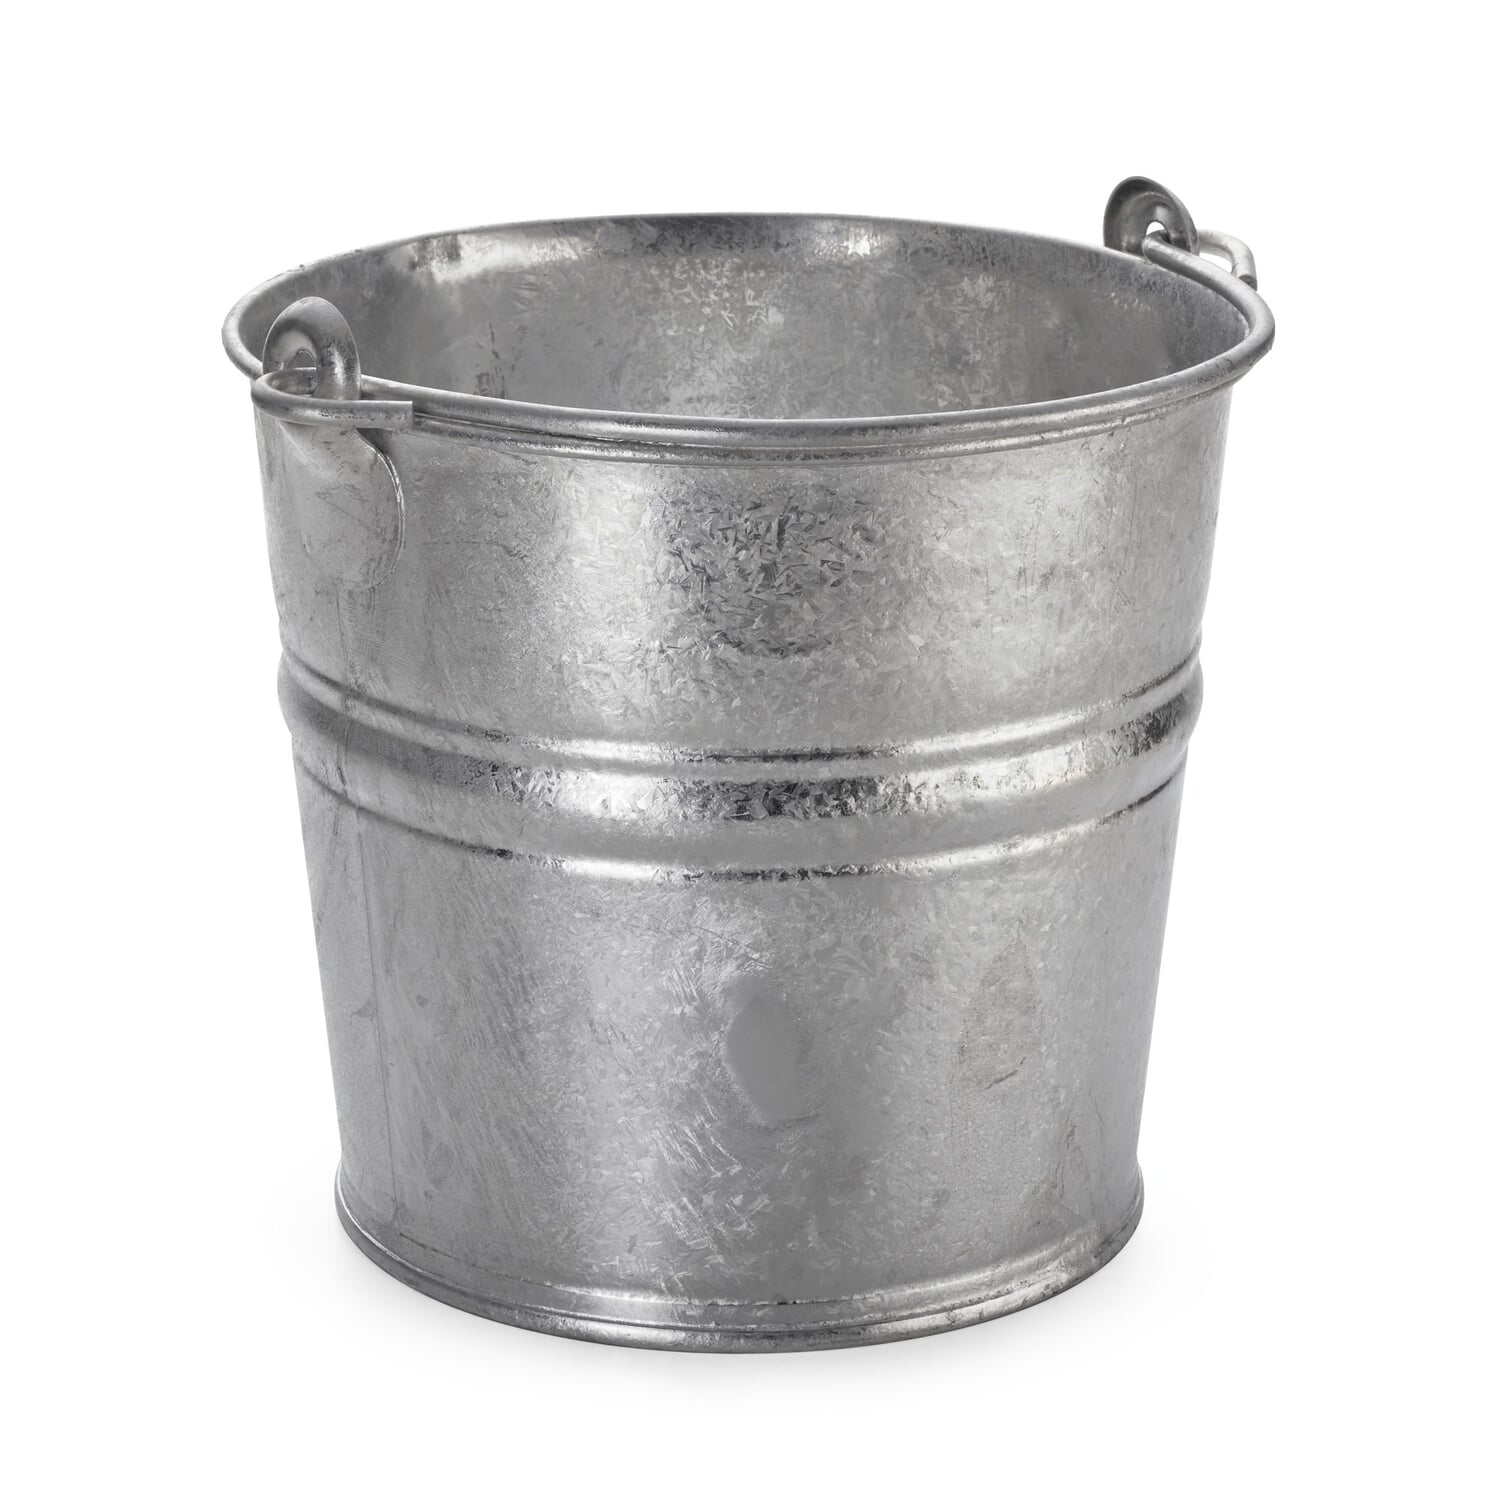  Small Bucket